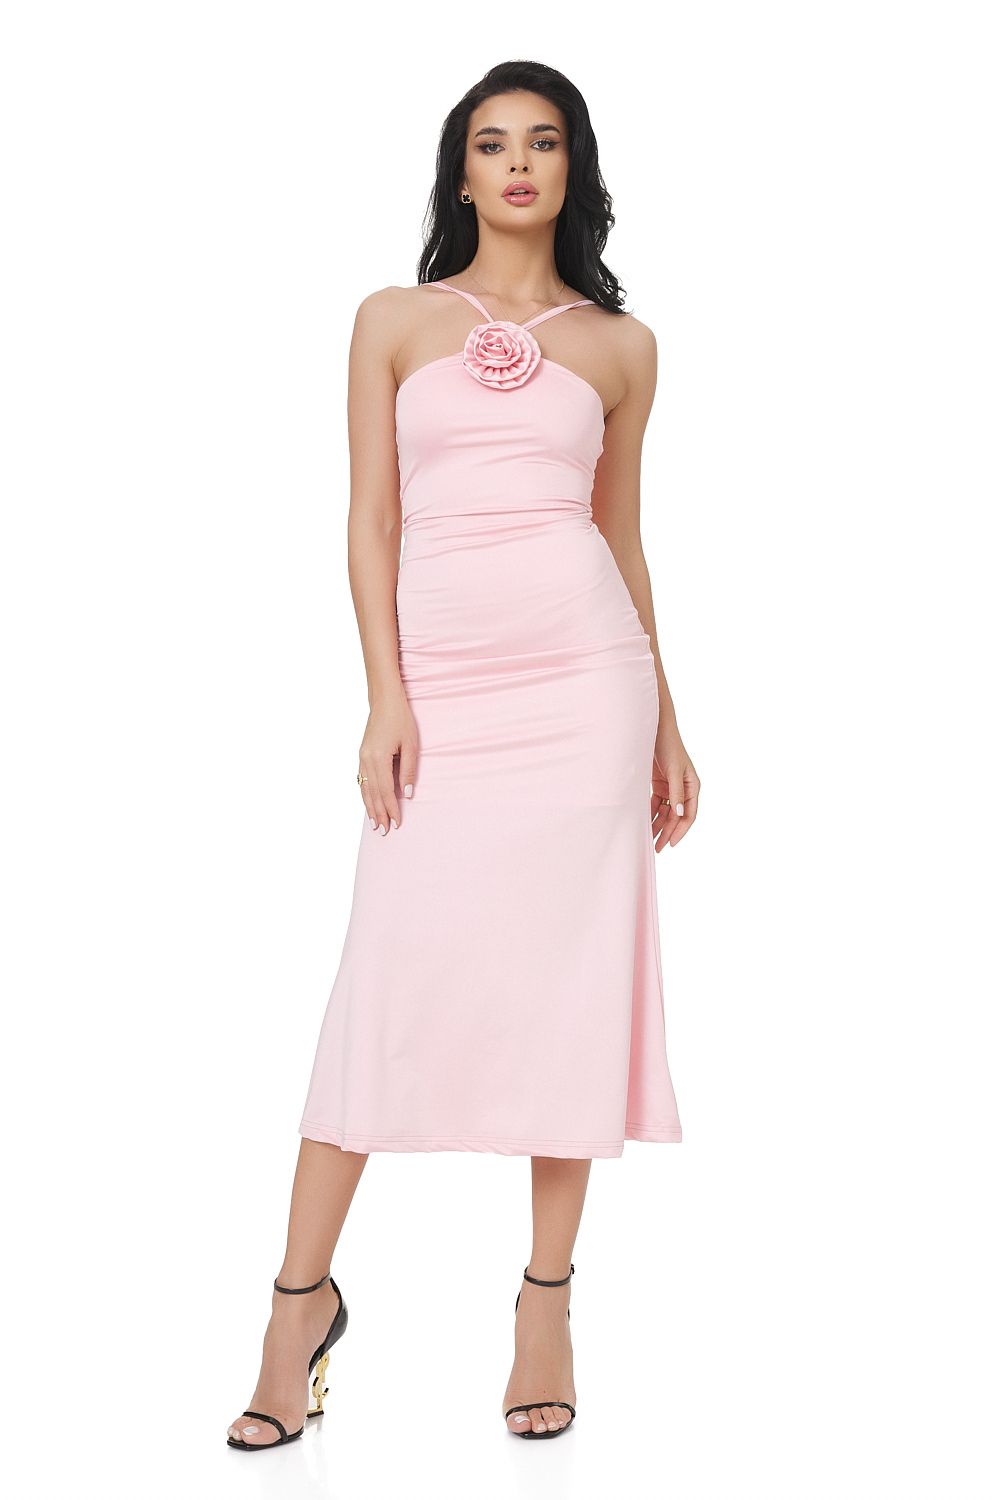 Loekie Bogas hosszú rózsaszín lycra női ruha